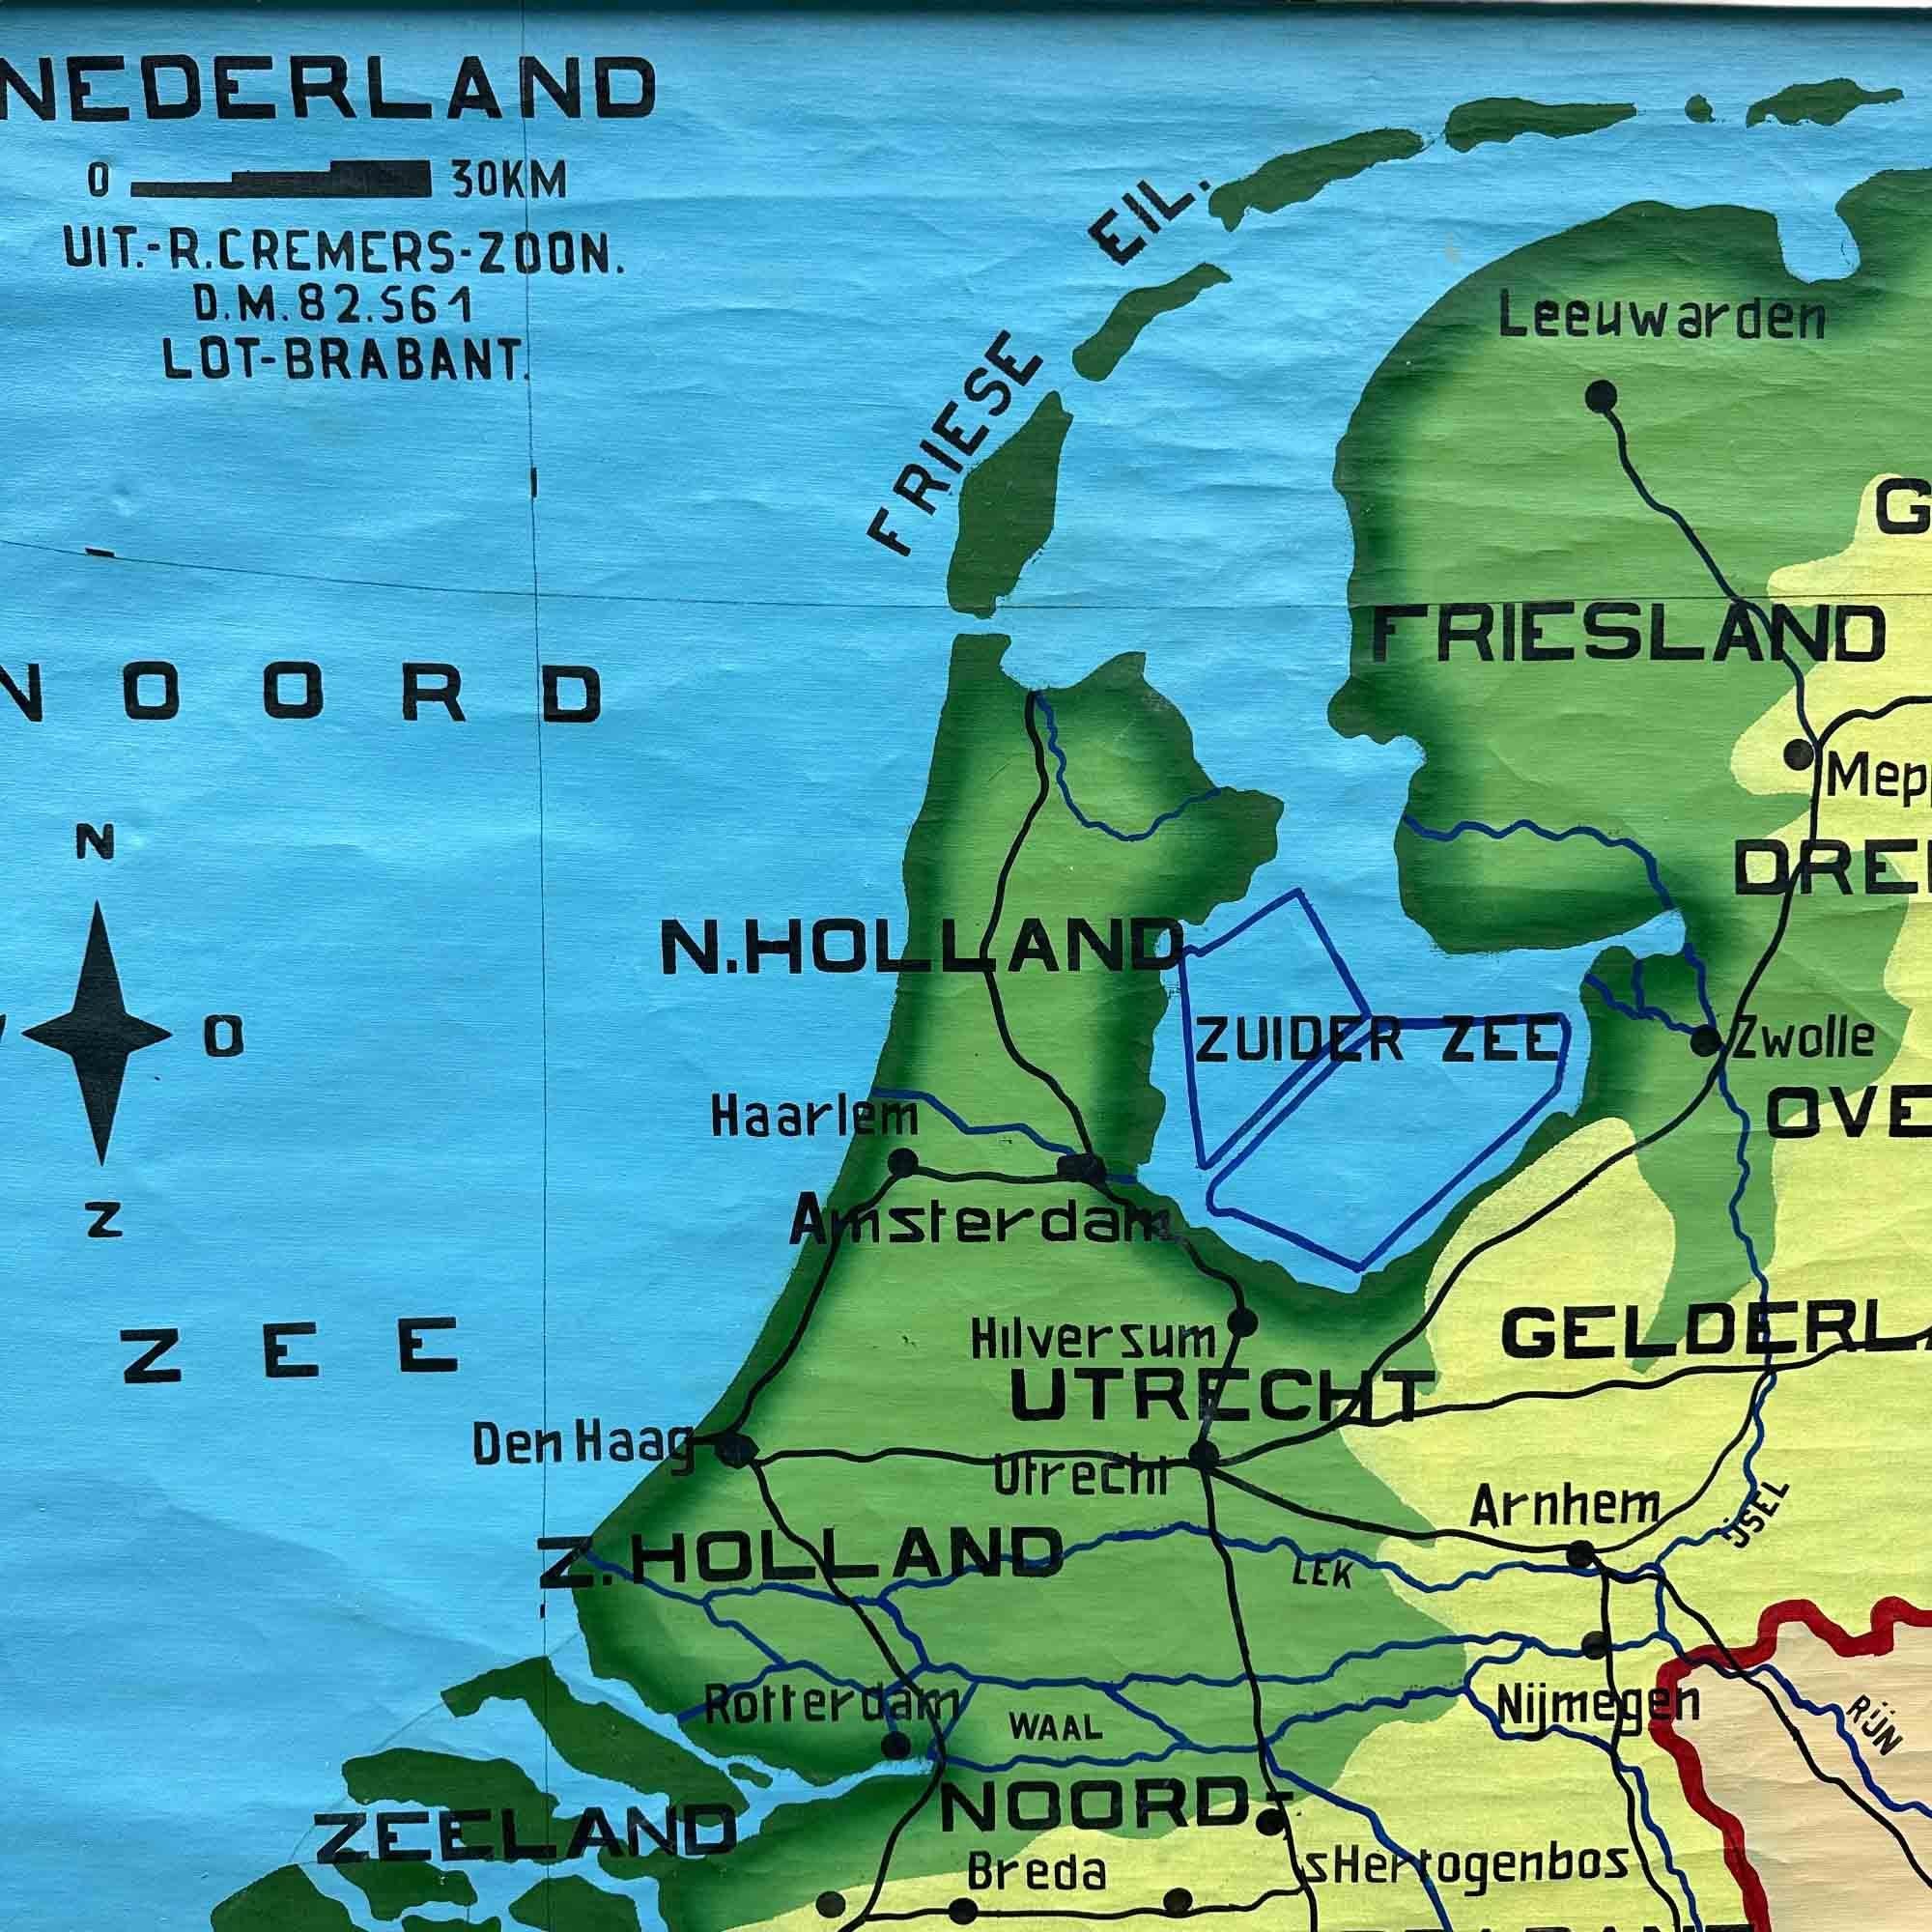 Une belle carte ancienne des Pays-Bas, peinte sur du lin. La carte montre les 3 différents reliefs (bas, moyen, haut) des Pays-Bas. Les belles couleurs donnent à cette carte scolaire une touche colorée à votre intérieur. Le texte est en néerlandais.